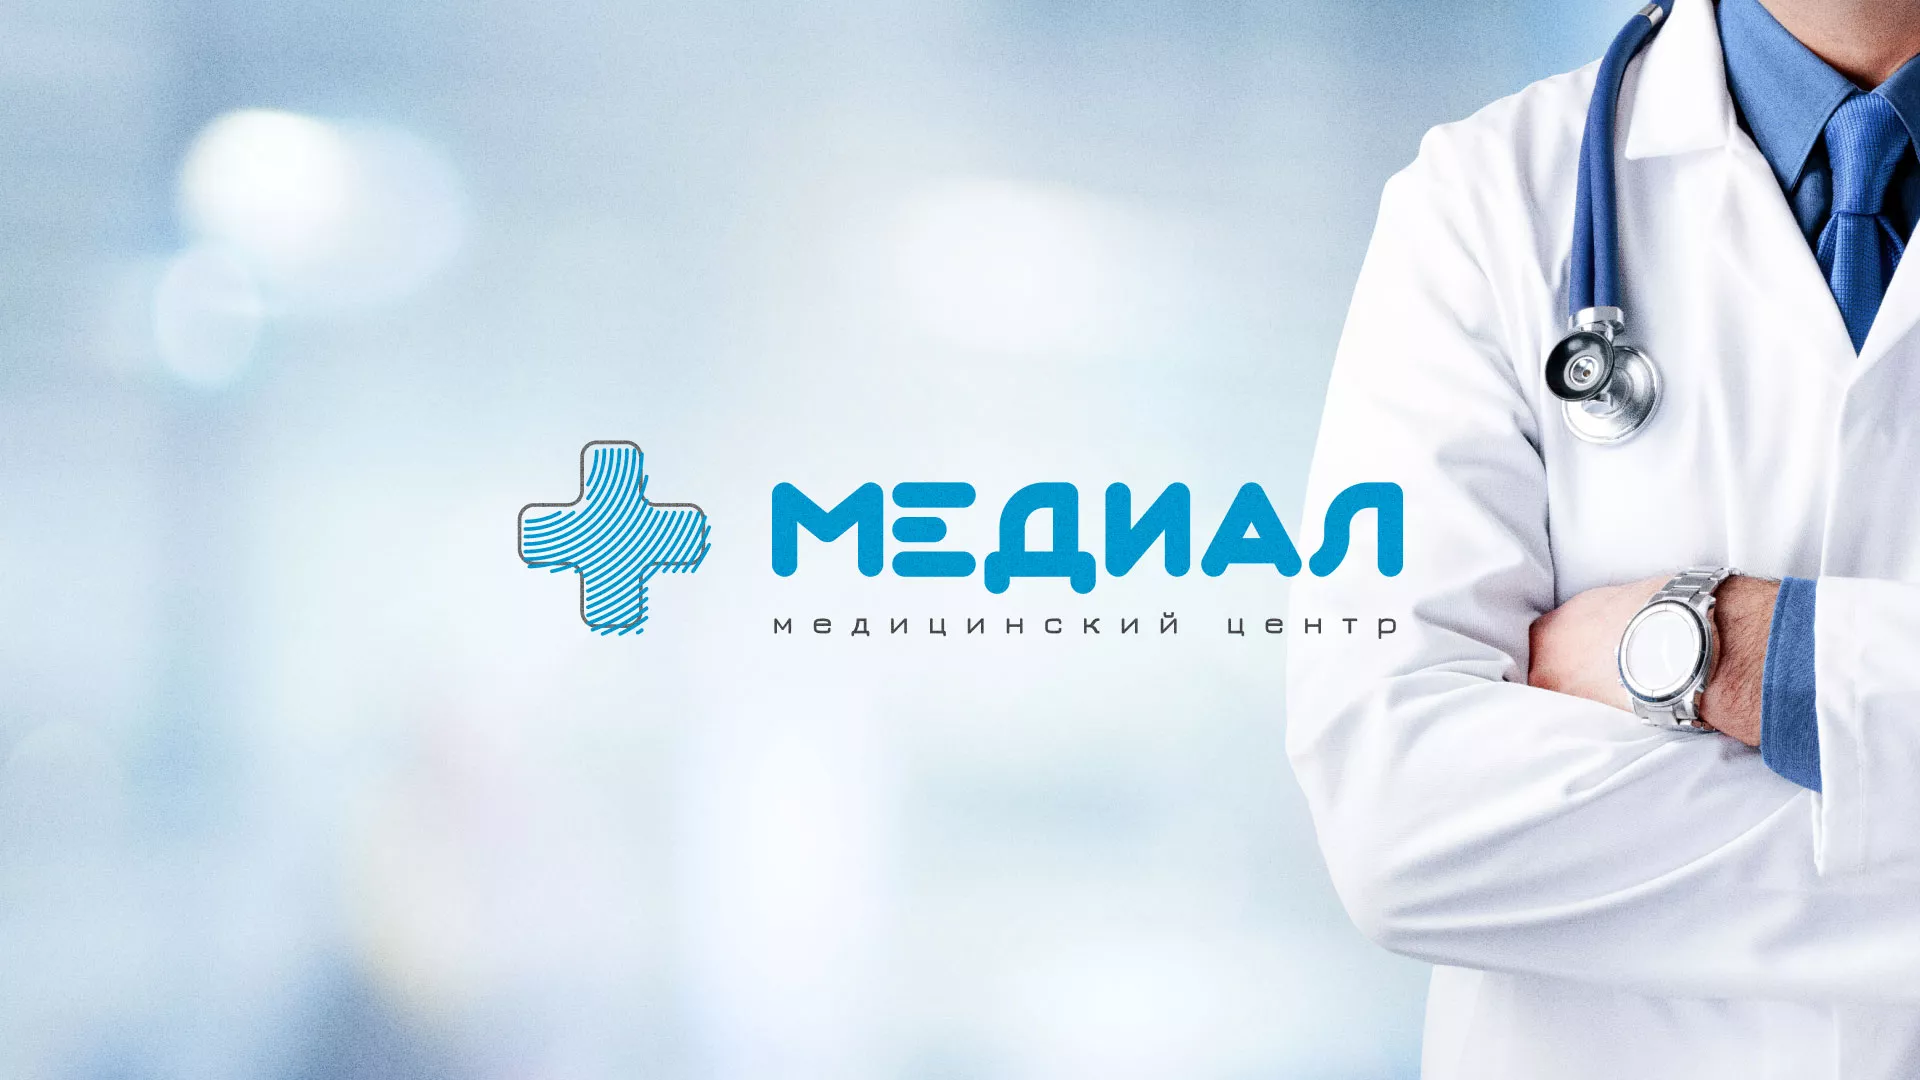 Создание сайта для медицинского центра «Медиал» в Кыштыме